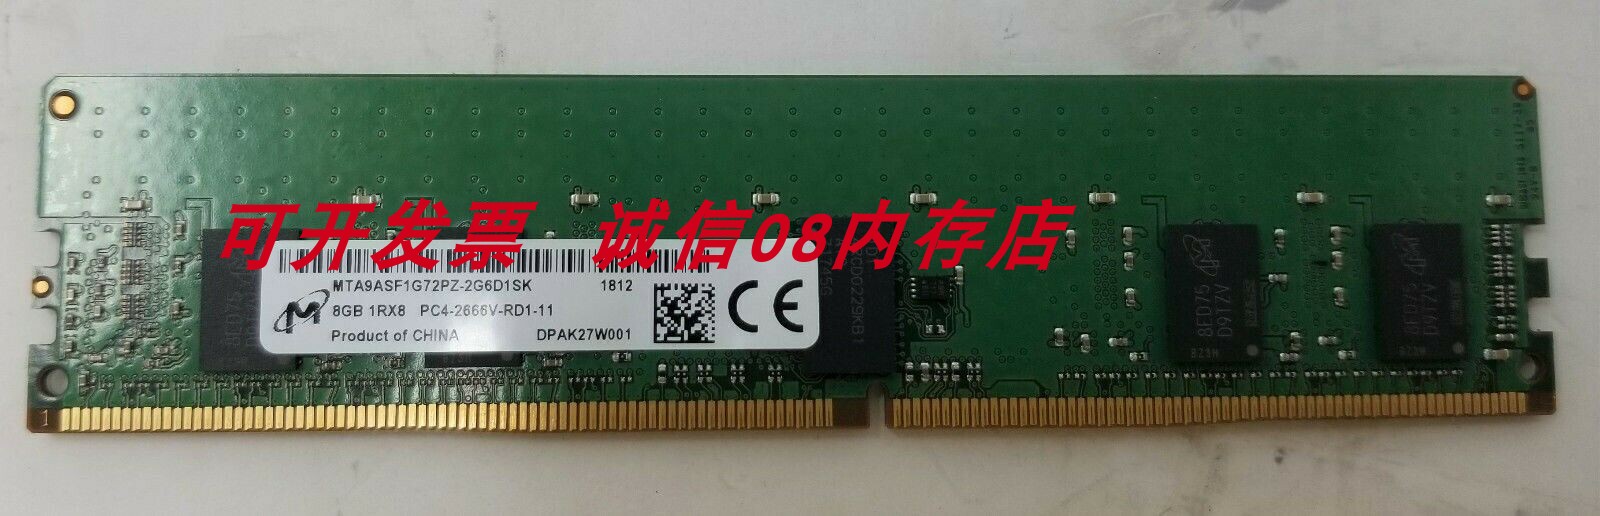 Micron镁光8G 1RX8 PC4-2666V-RD1 DDR6 ECC REG RDIMM服务器内存-图0